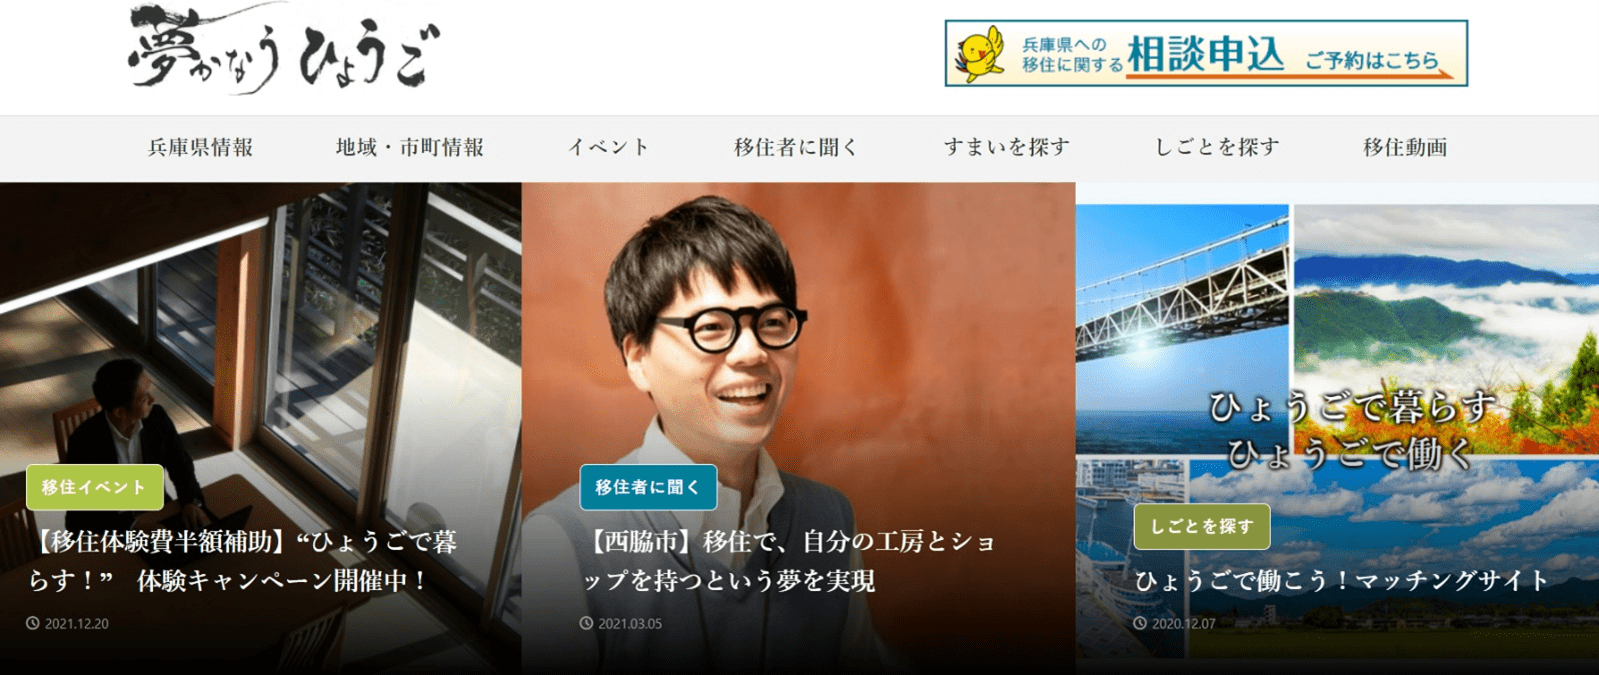 兵庫県への移住者向け情報サイト「夢かなうひょうご」